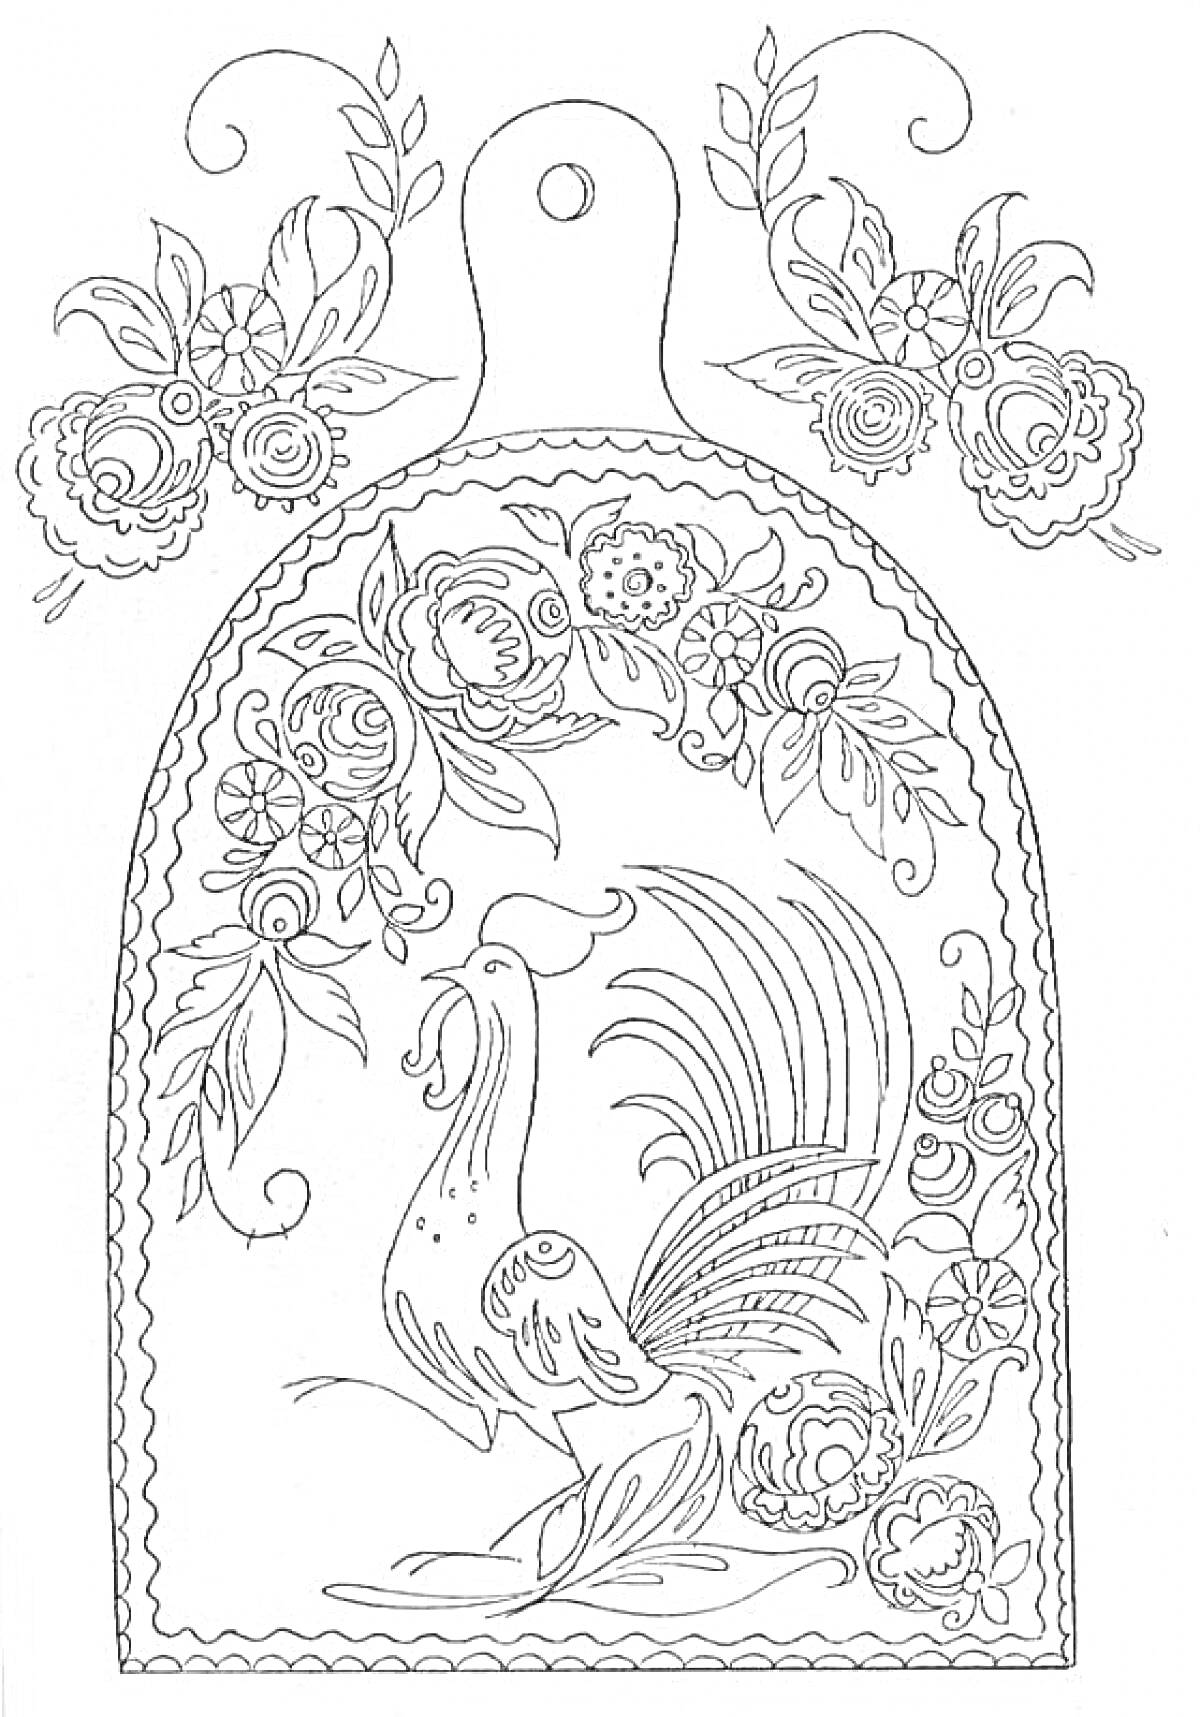 Раскраска Хохломская роспись на разделочной доске с петухом, цветами и листьями